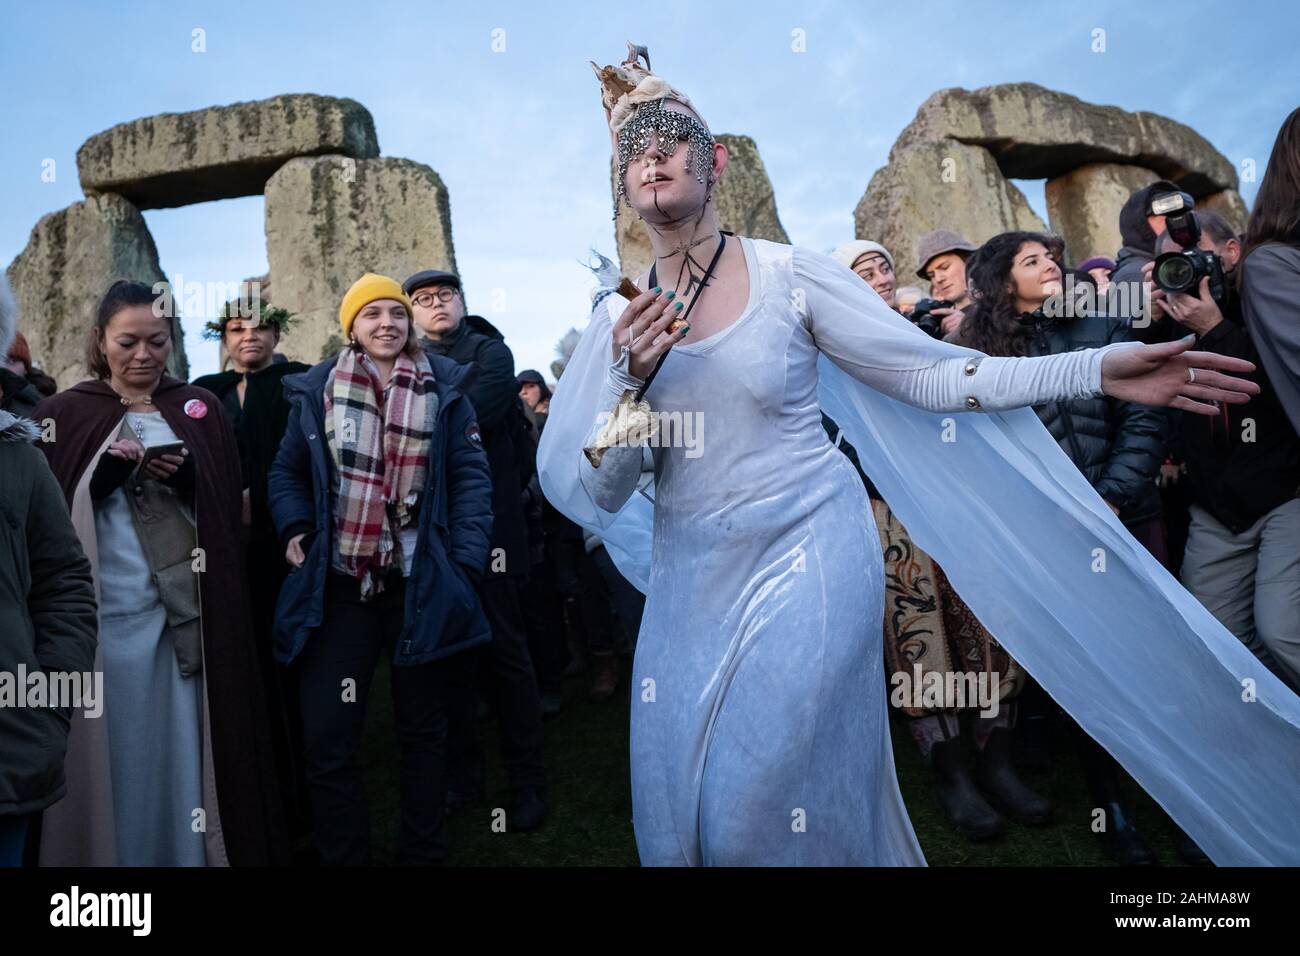 Solstizio d'inverno celebrazioni a Stonehenge. Migliaia di festaioli compresi giorno moderno druidi e pagani si riuniranno presso il sito di Stonehenge sulla Piana di Salisbury, Regno Unito. Foto Stock